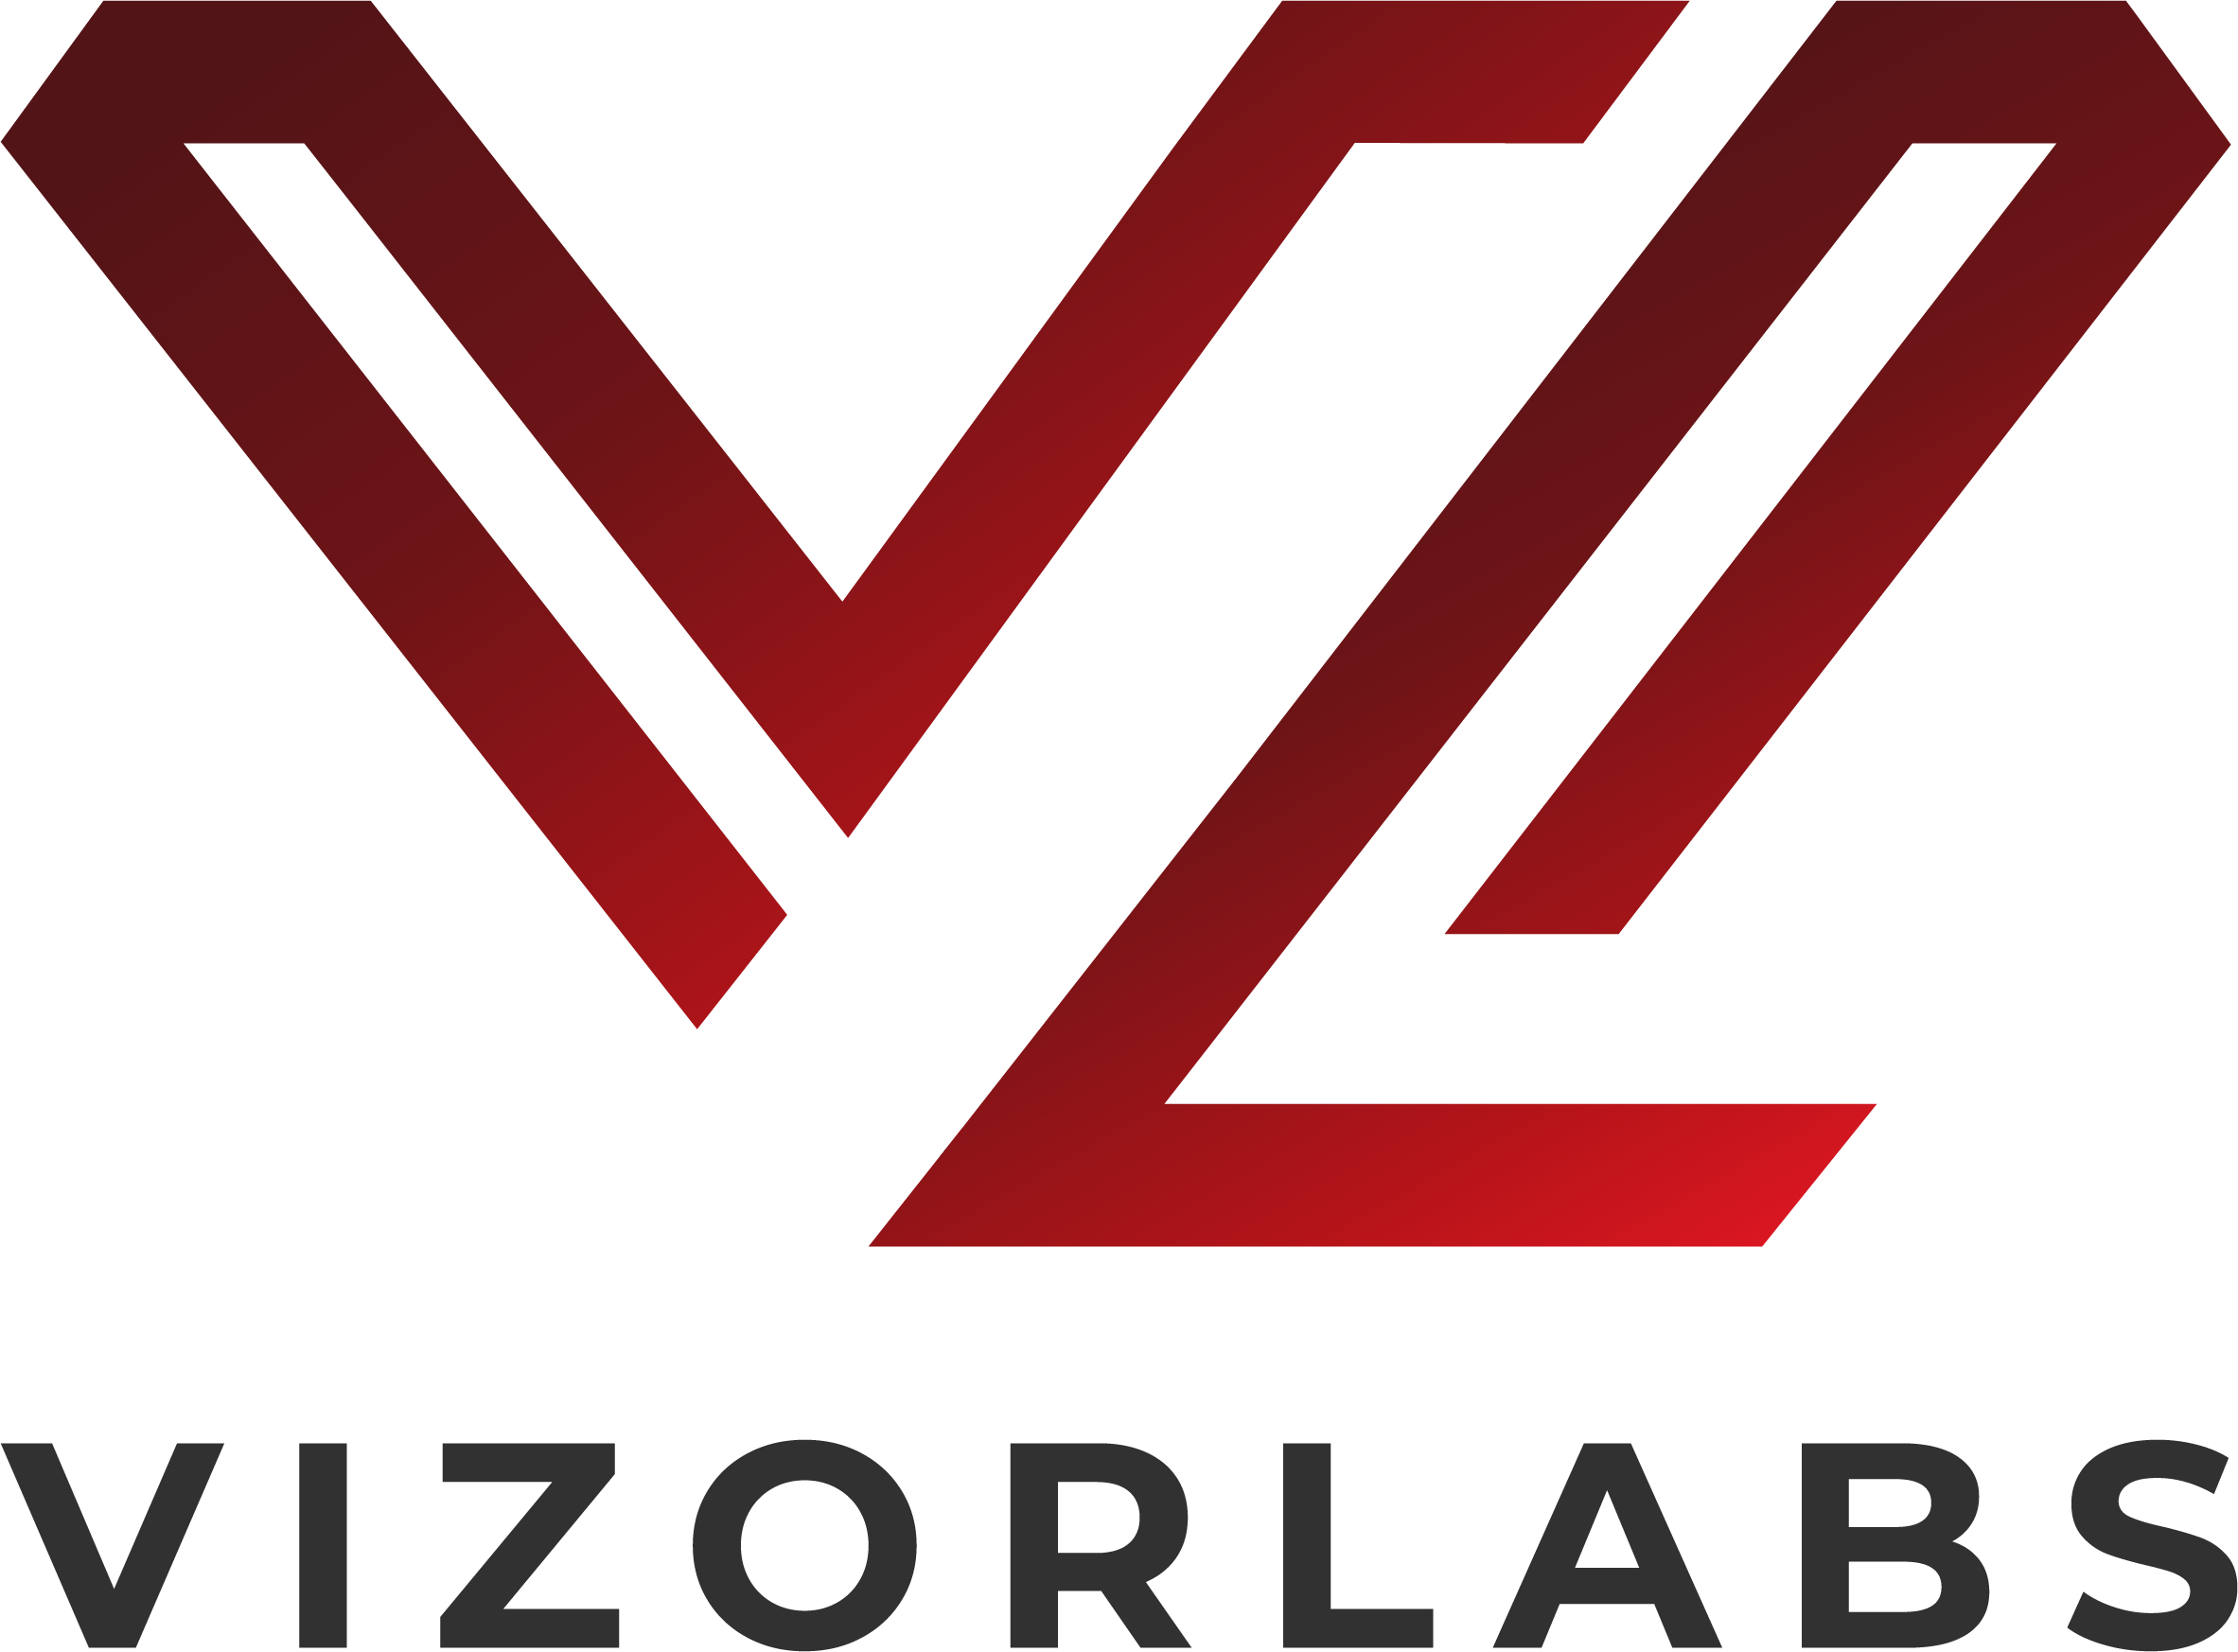 Сател - VizorLabs - Визорлабс